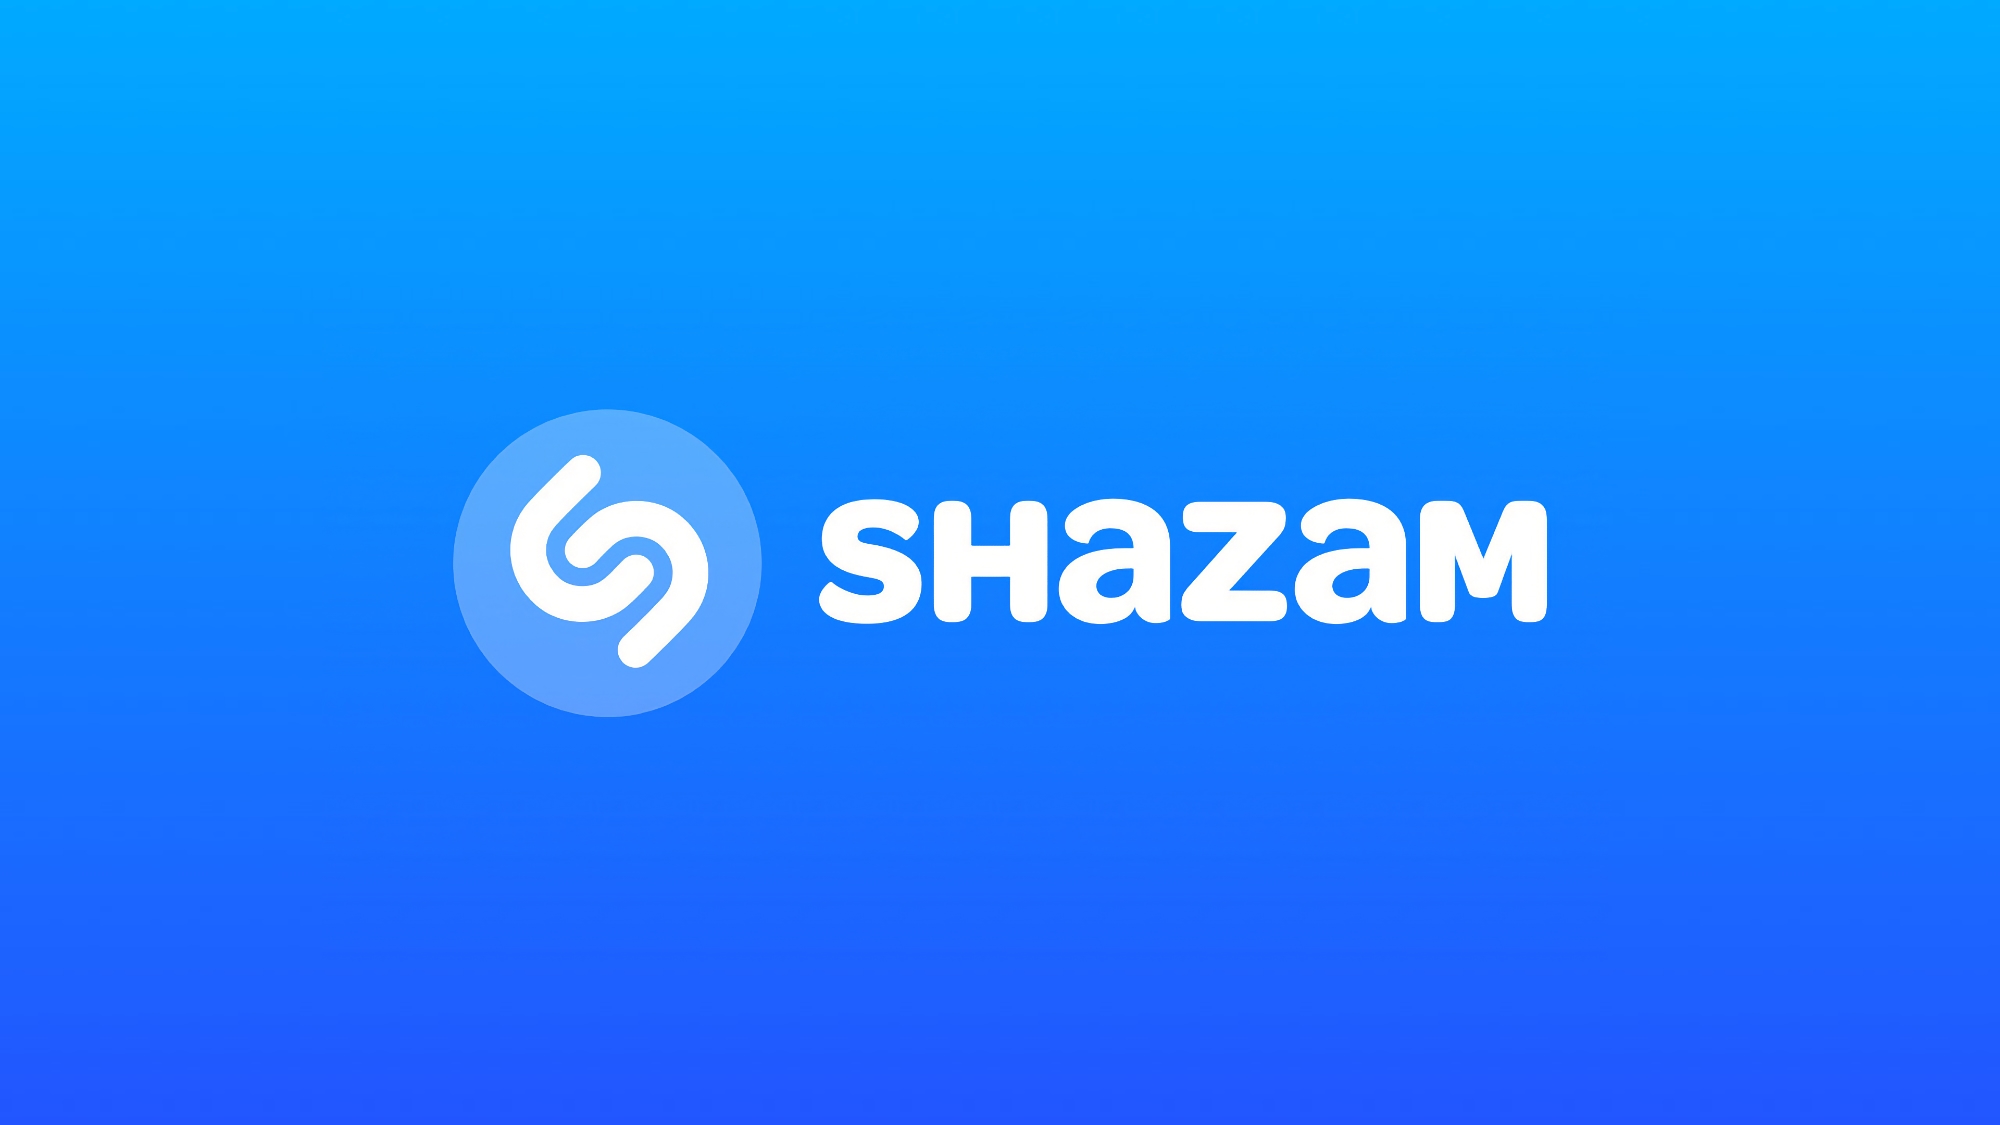 Shazam leert muziek herkennen in TikTok, Instagram, YouTube en andere apps